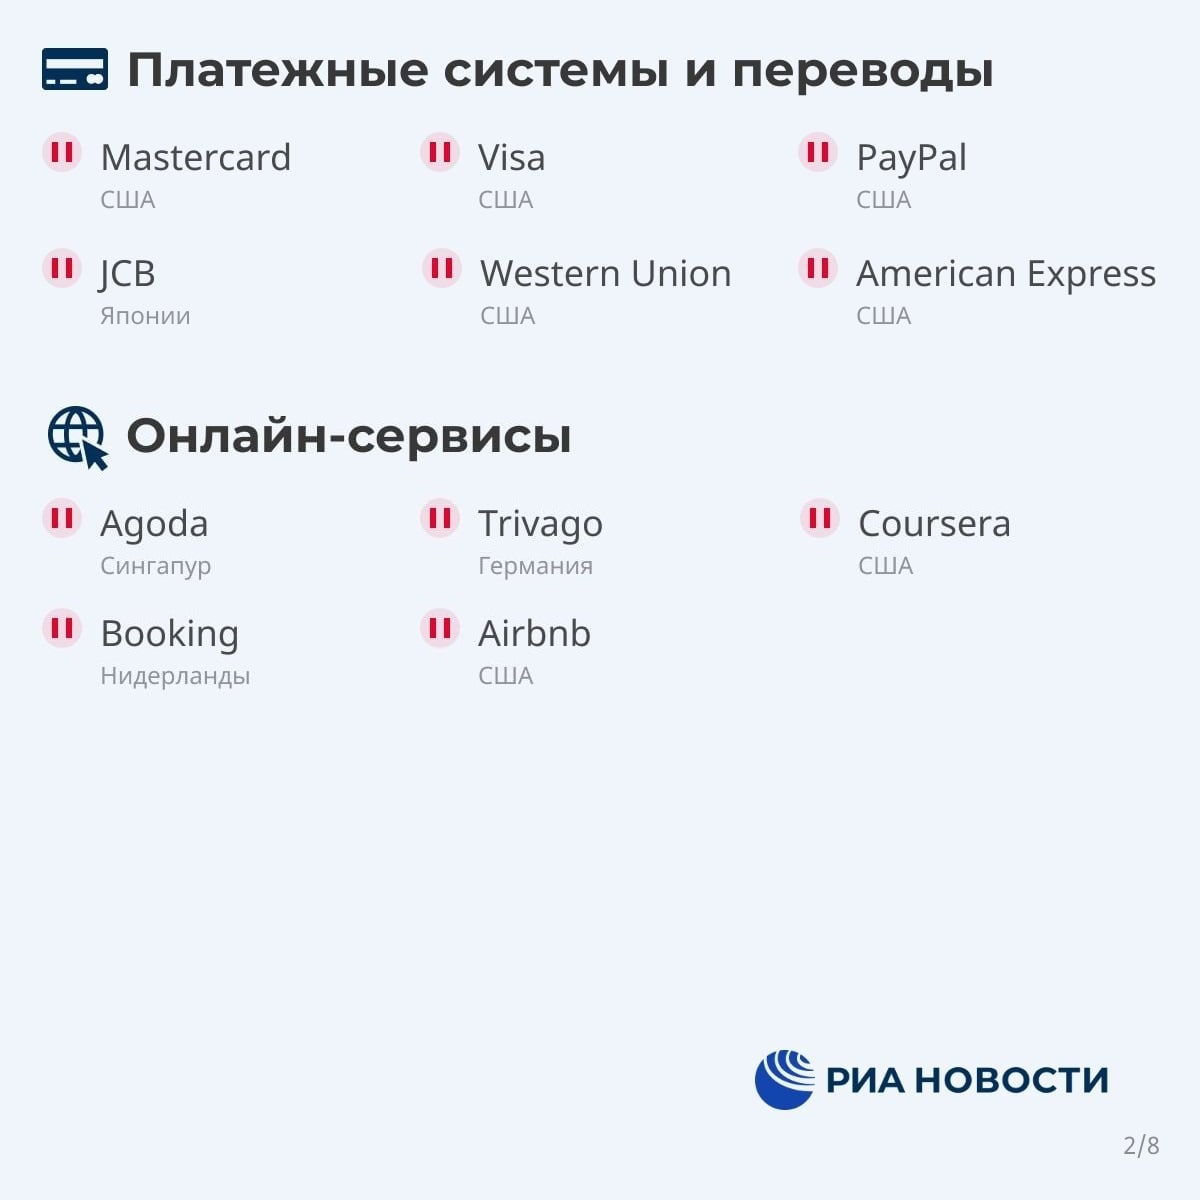 Список компаний, которые уходят из России